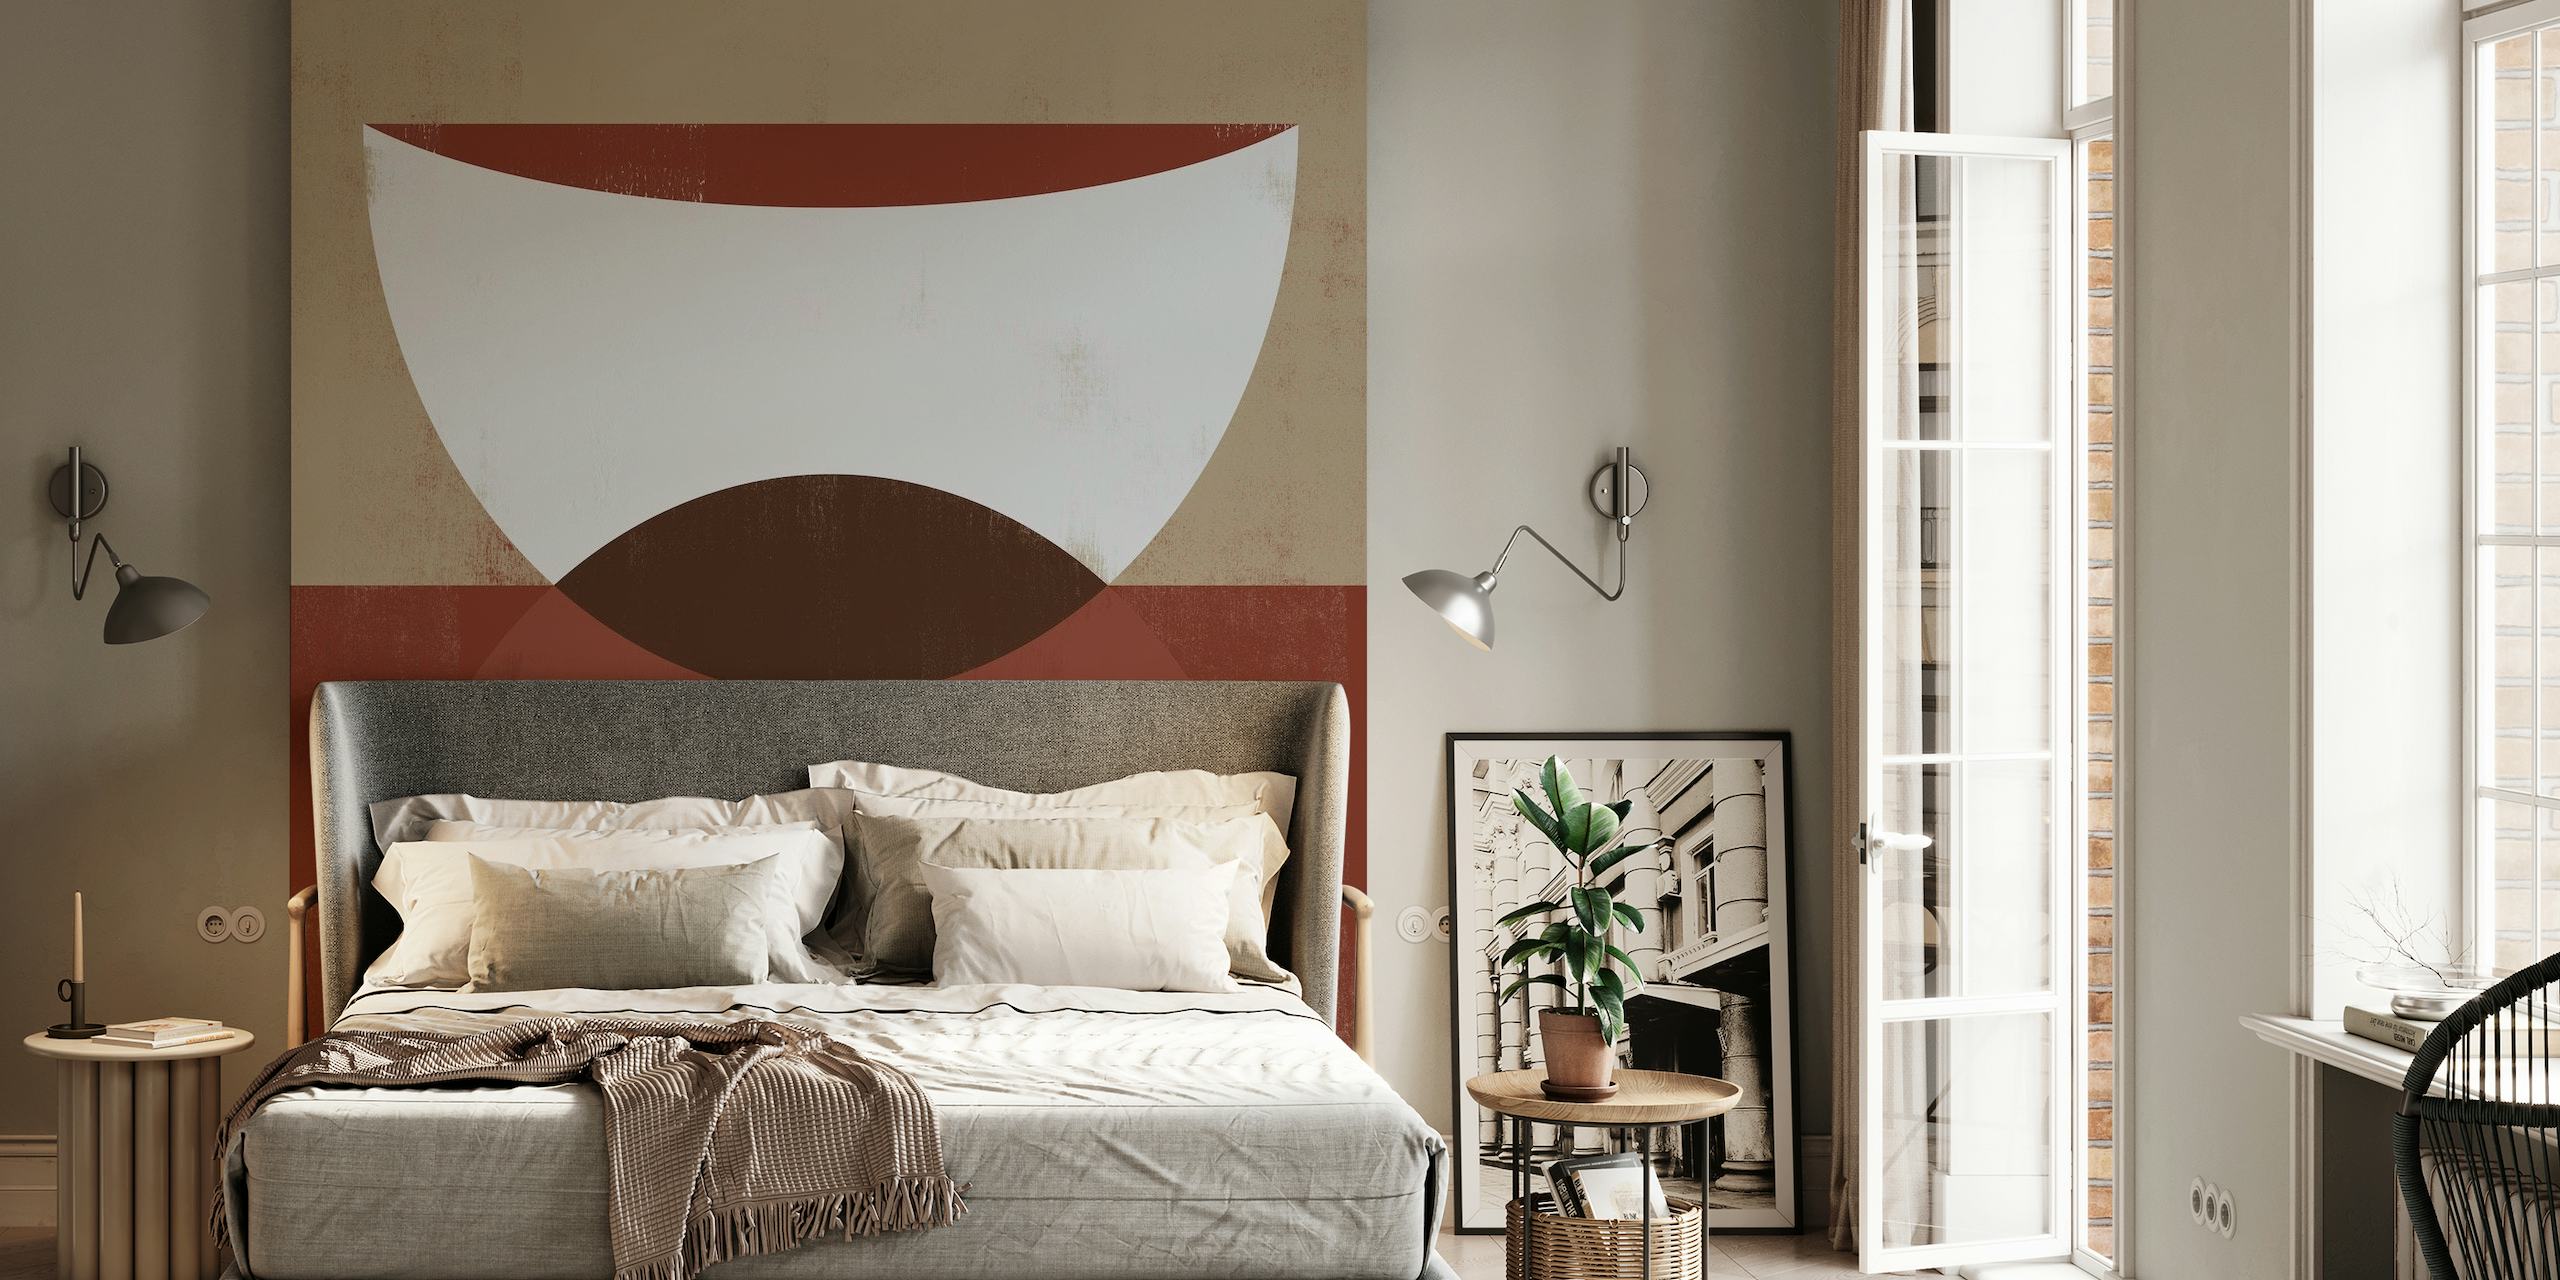 SHE Rouge 4 abstraktní geometrická nástěnná malba v krémové, hnědé a kaštanové barvě